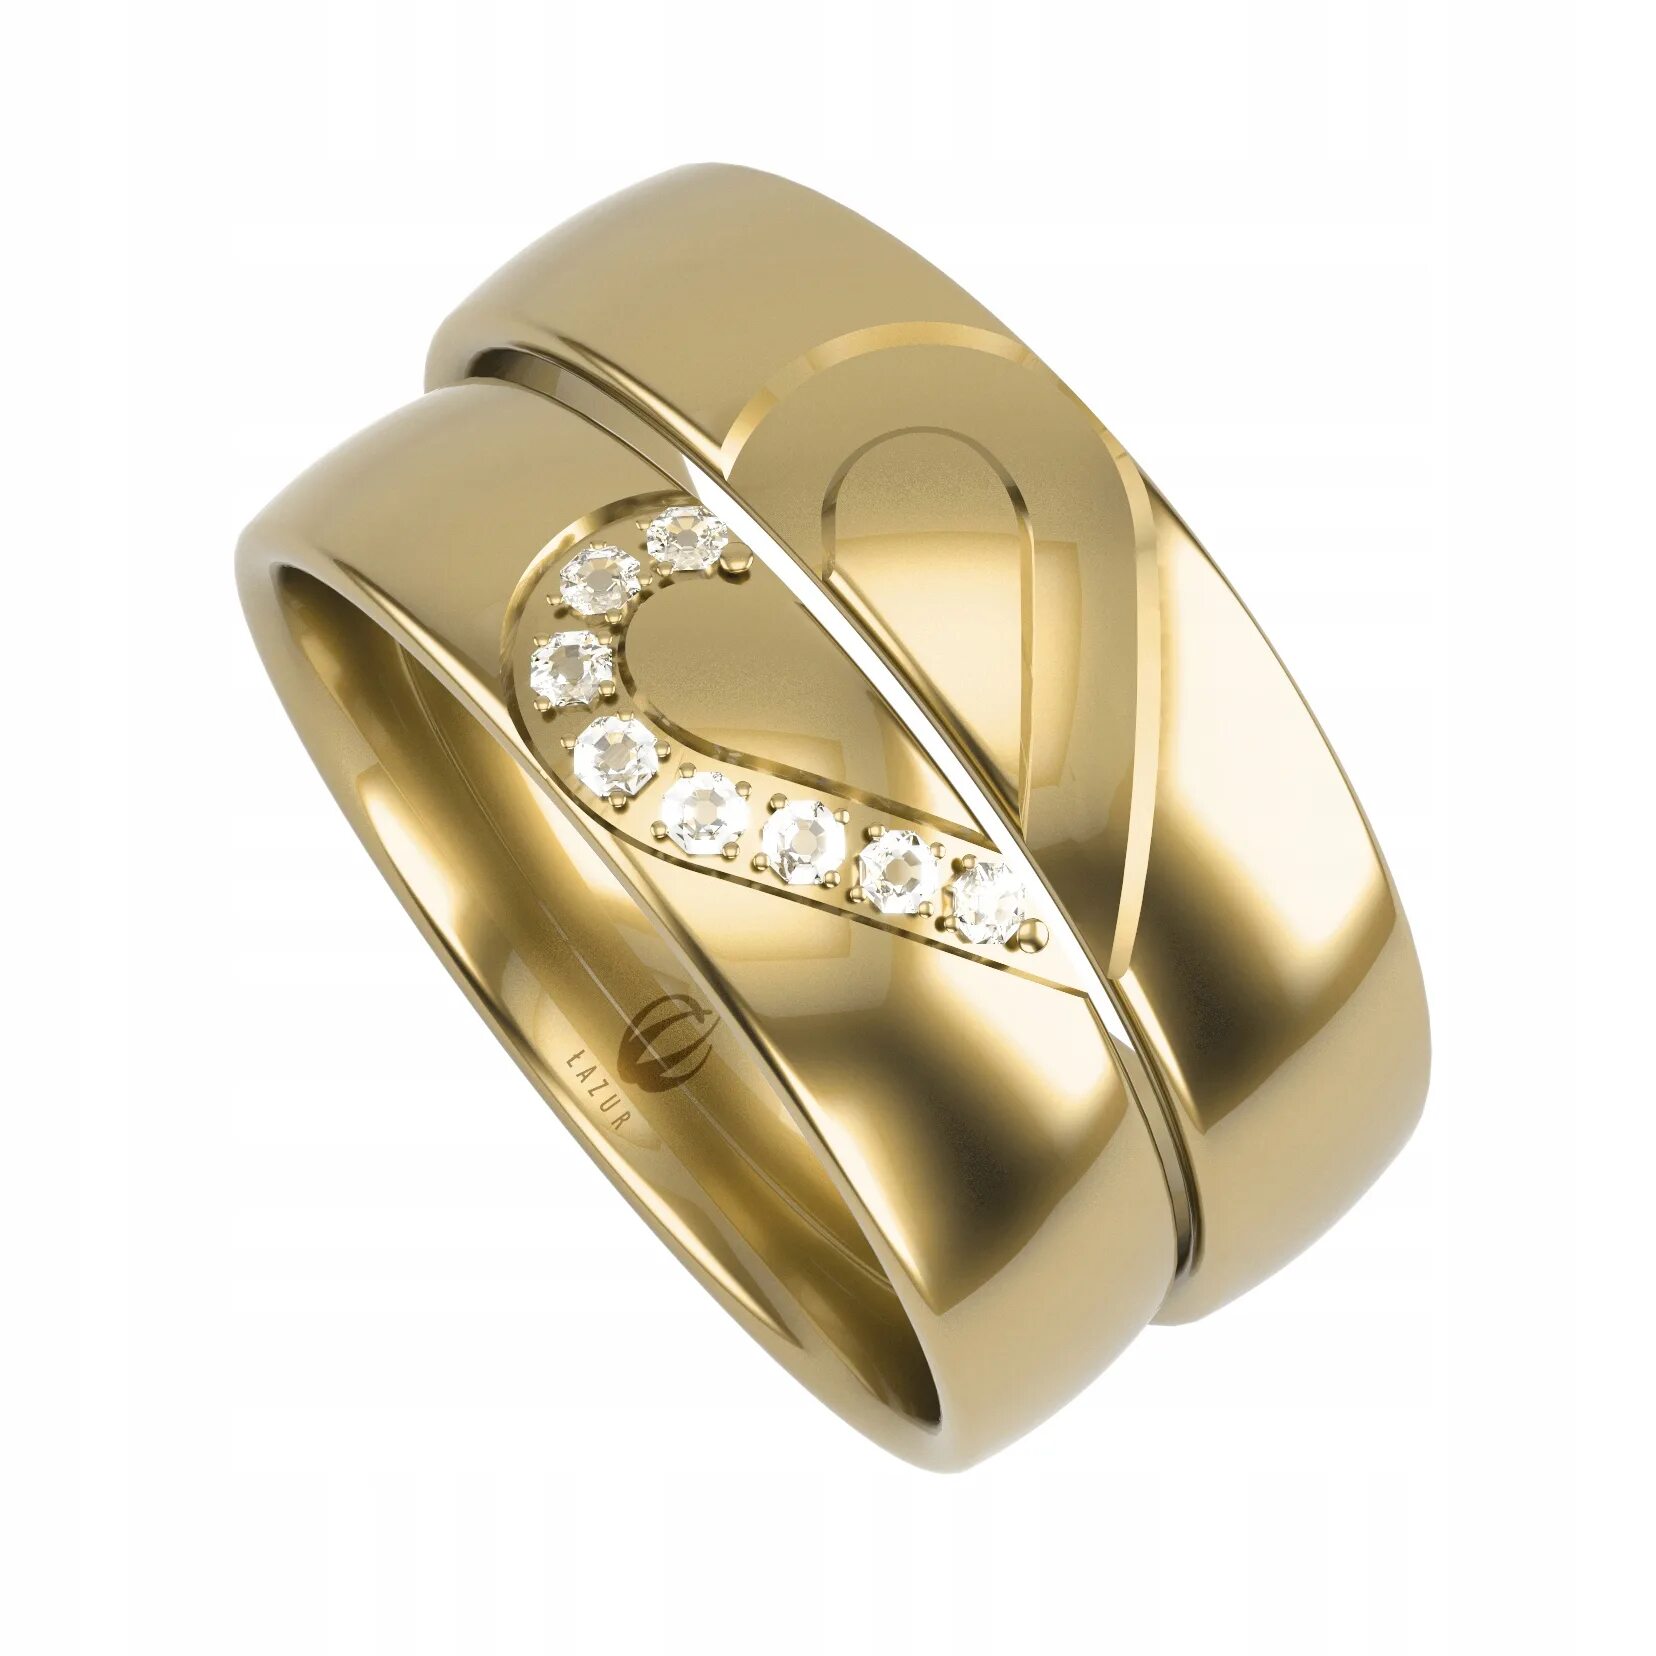 Обручальные кольца парные золотые 585. Парные обручальные кольца из золота 585. Золотое кольцо обручалка 585. Золото 585 обручальные кольца парные. Купить недорого обручальные кольца золото